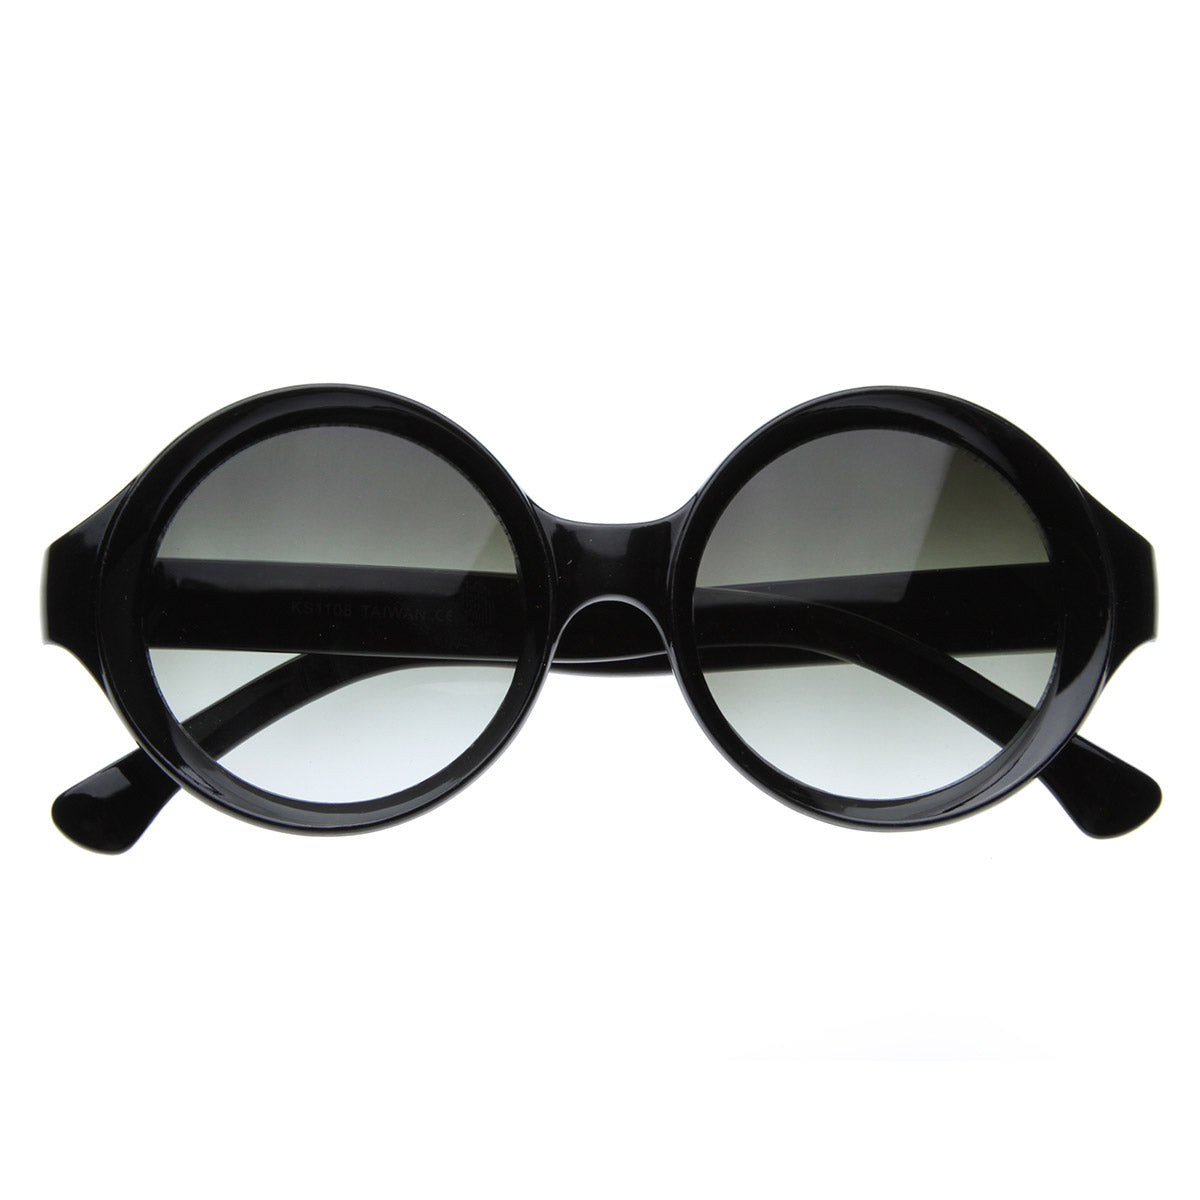 Men's Round & Circle Sunglasses, Designer Sunglasses